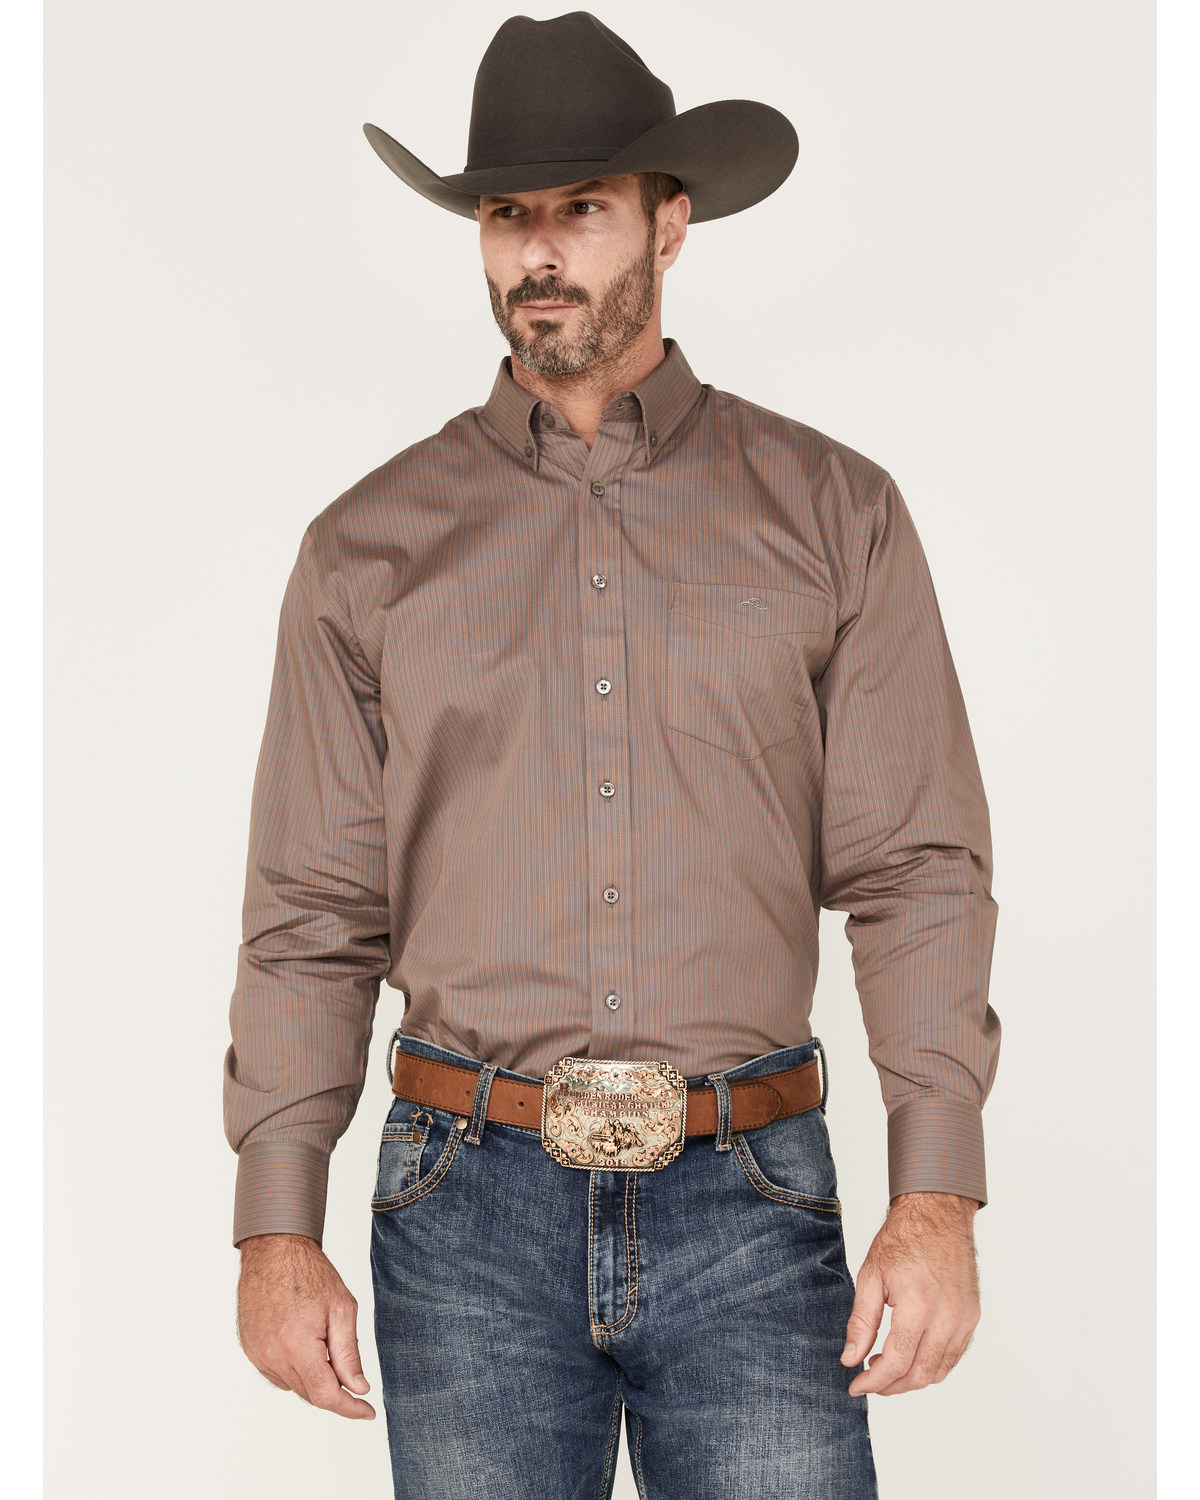 Resistol Men's Raddix Stripe Button Down Western Shirt